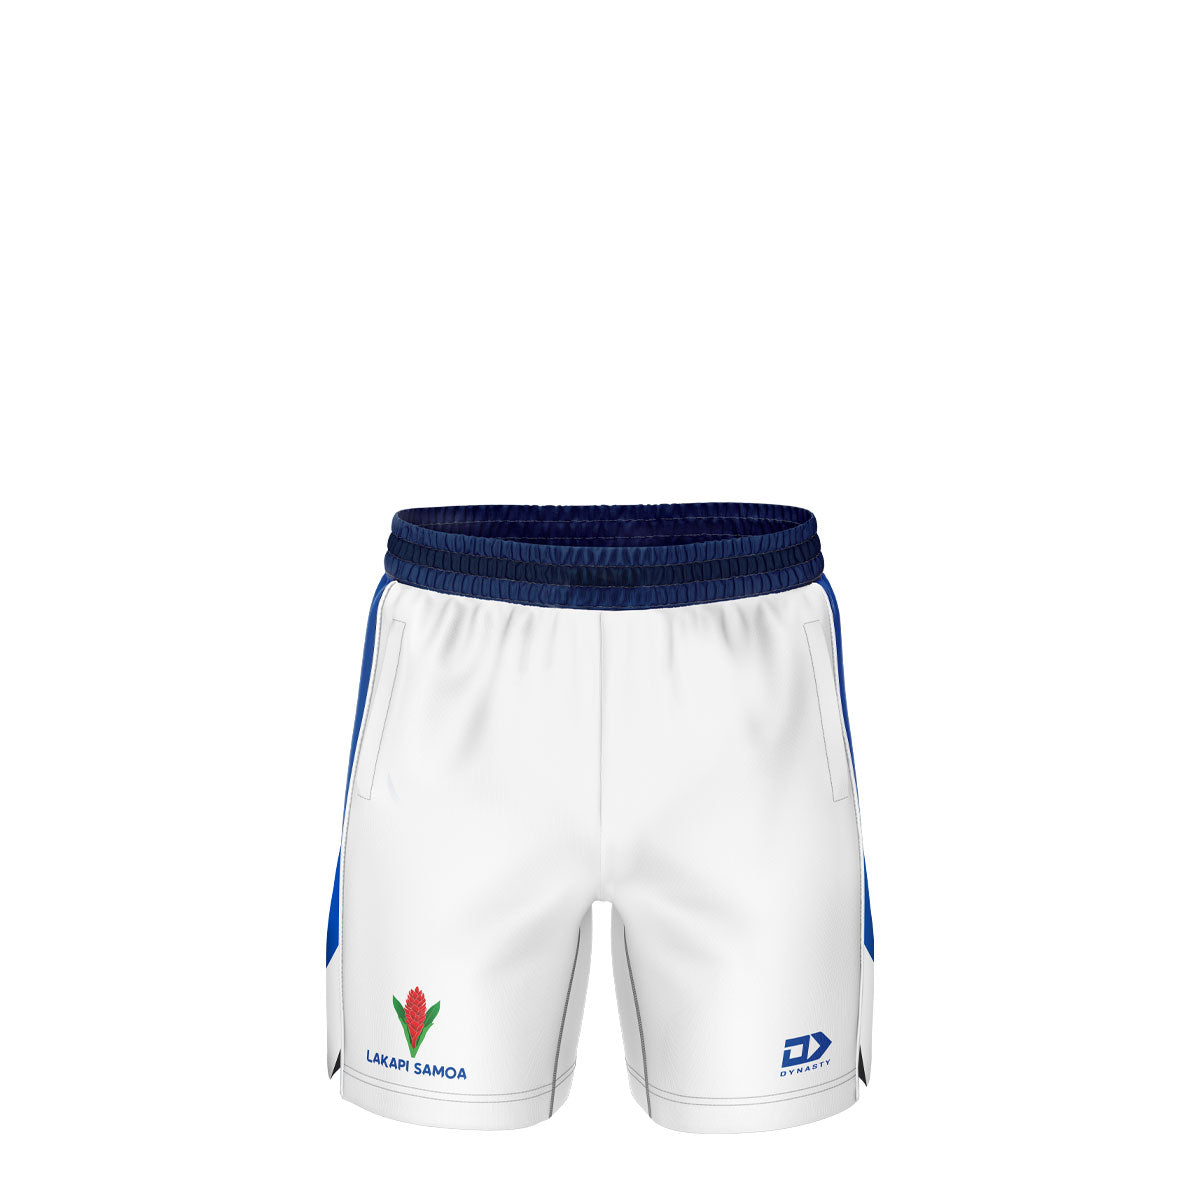 2021 Lakapi Samoa Mens Gym Short - White